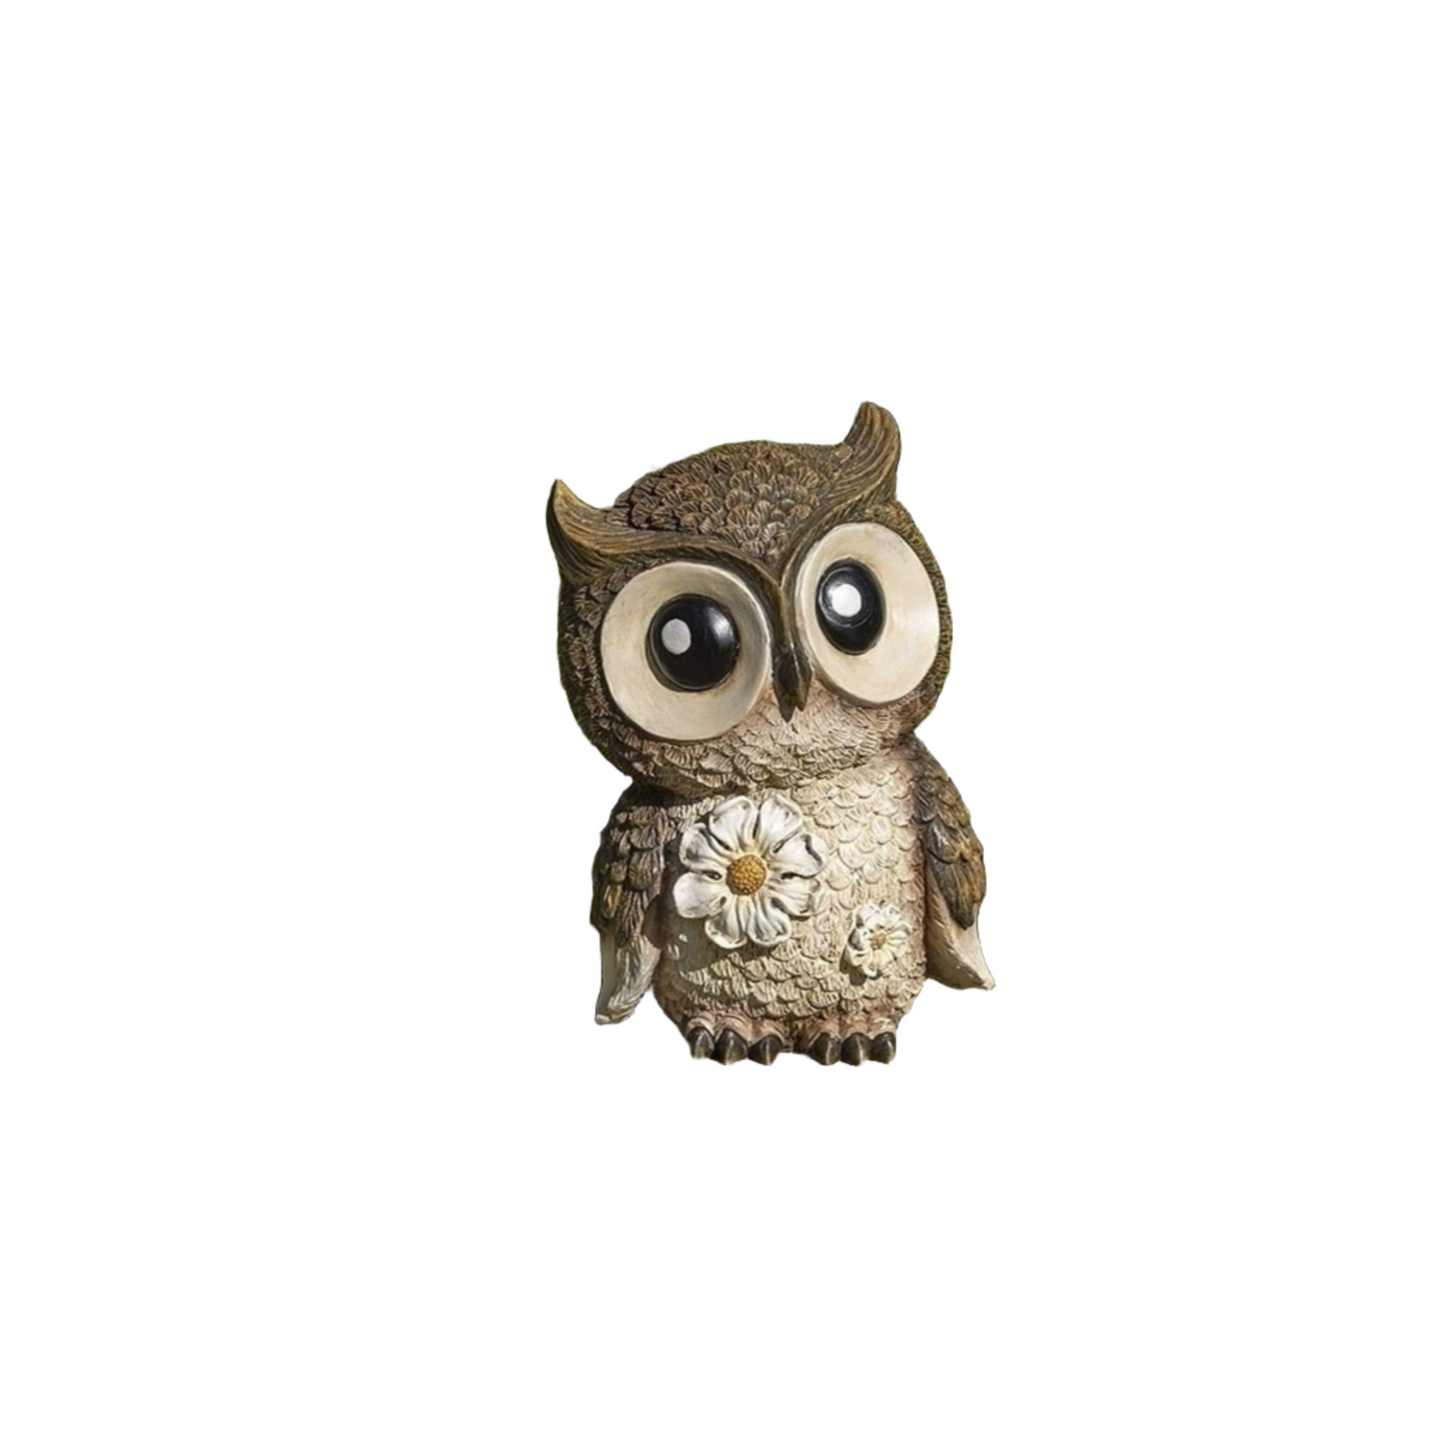 Roman Mini Owl Painted Critter Garden Statue